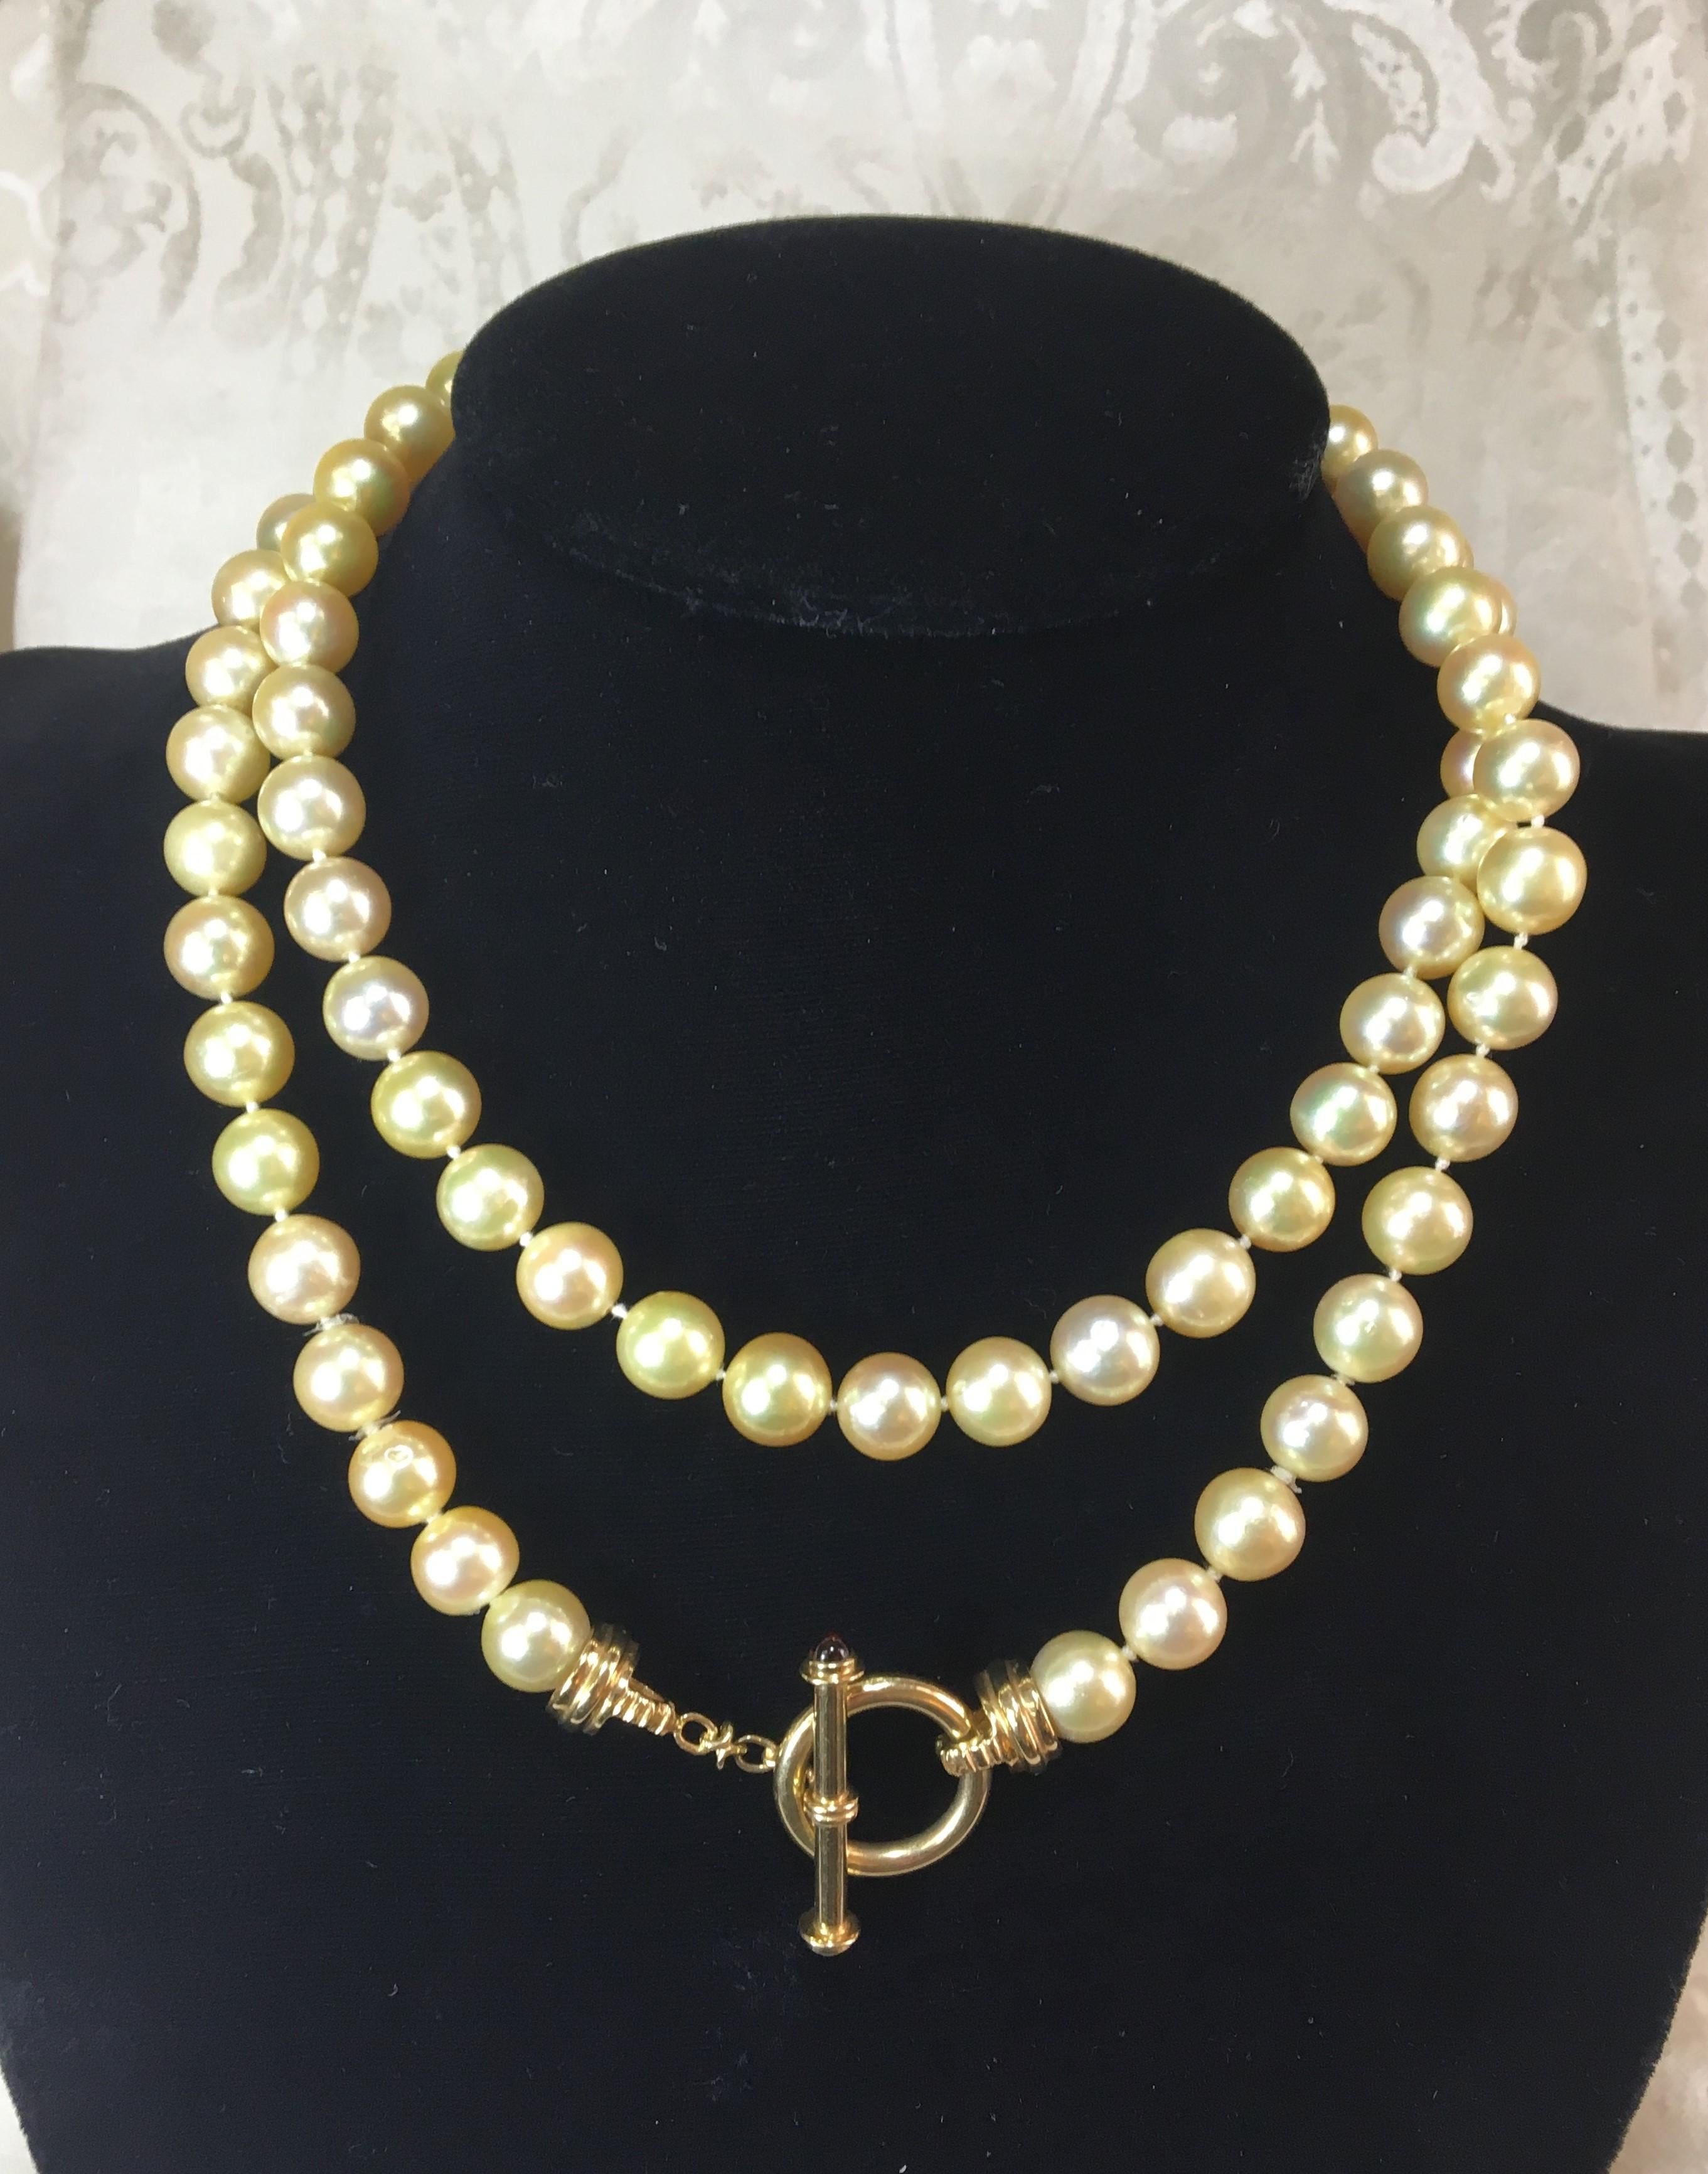 80 goldfarbene Perlen, rund
Ungefähr 9,5 - 10mm Perlen
34 Zoll Seillänge
14K Gelbgold Toggle-Verschluss
Zwei Cabochon-Steine in Knebelknopf
